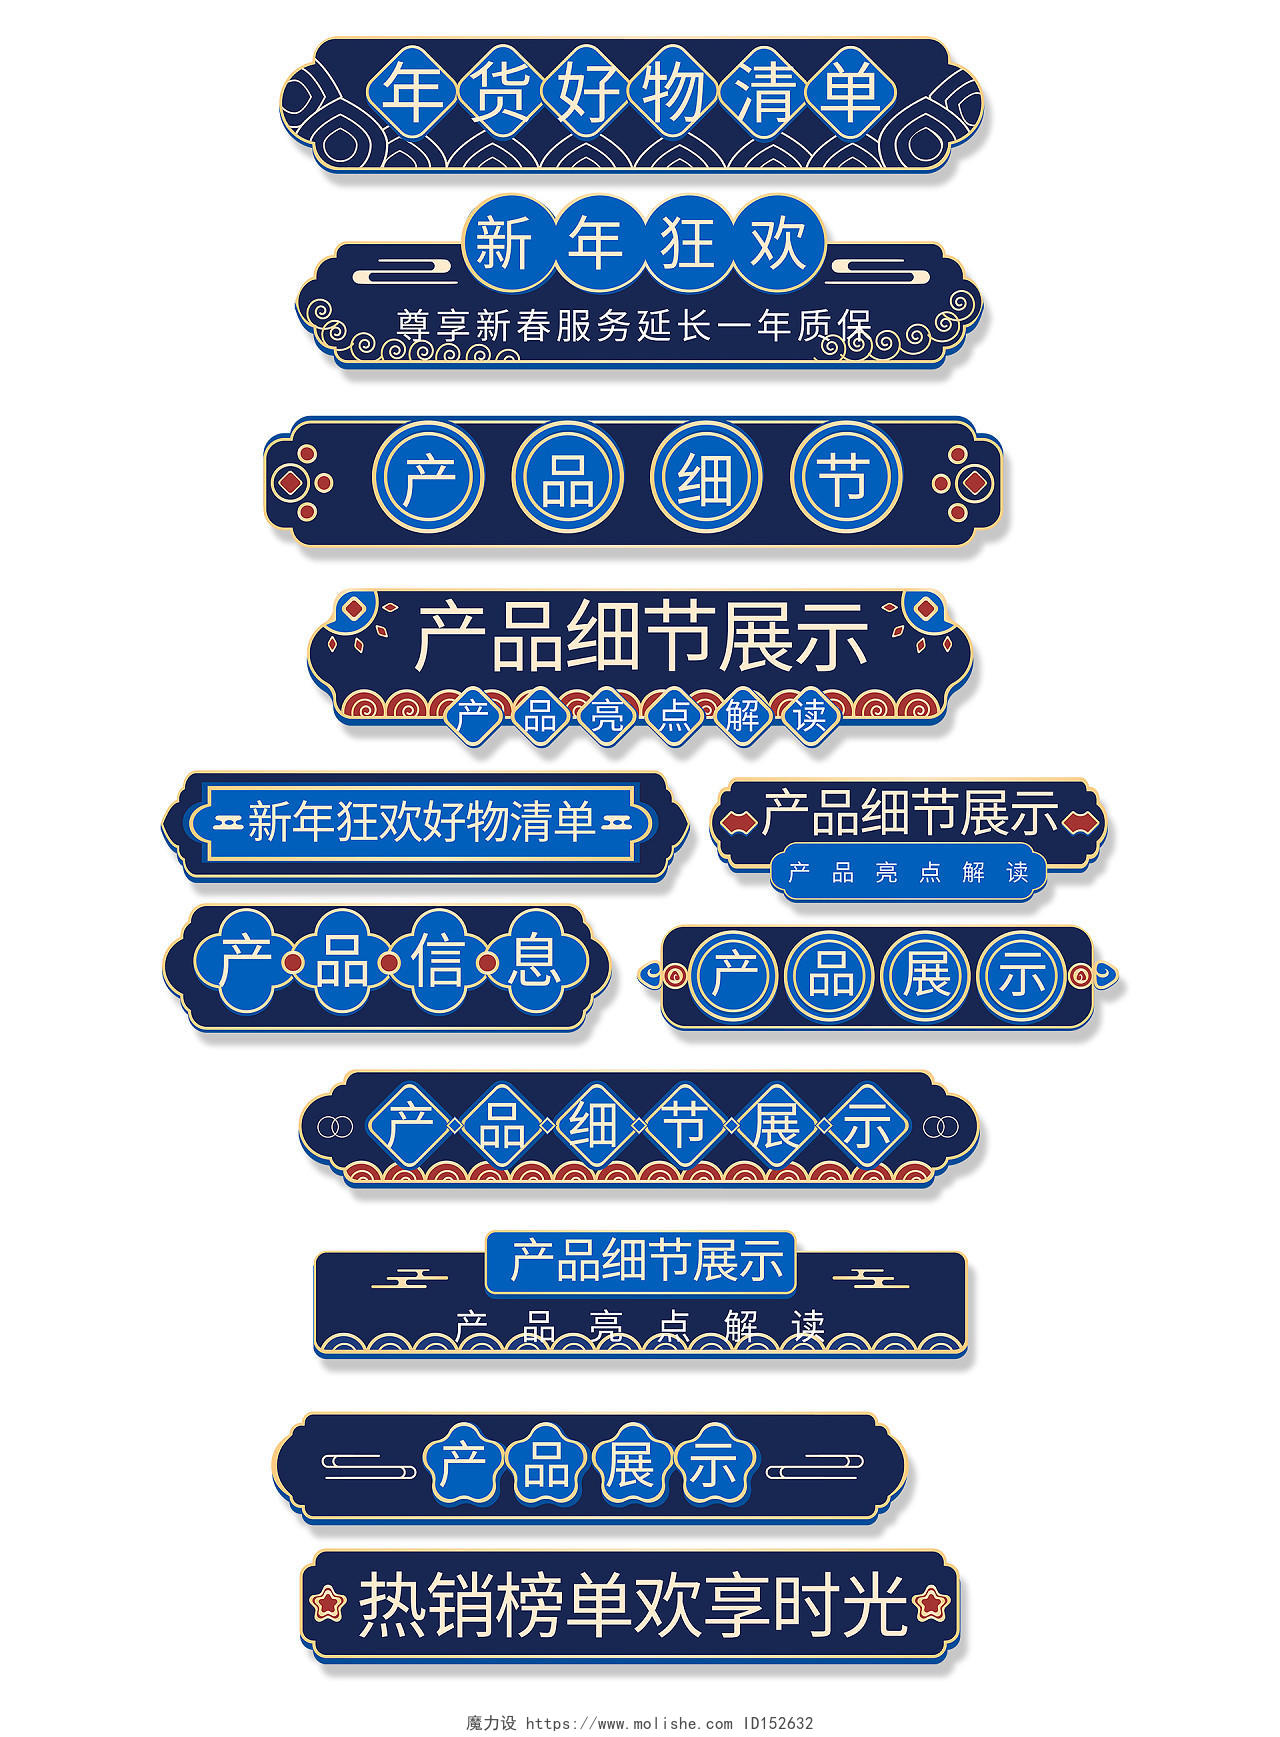 墨蓝中国风产品展示新年狂欢详情导航条